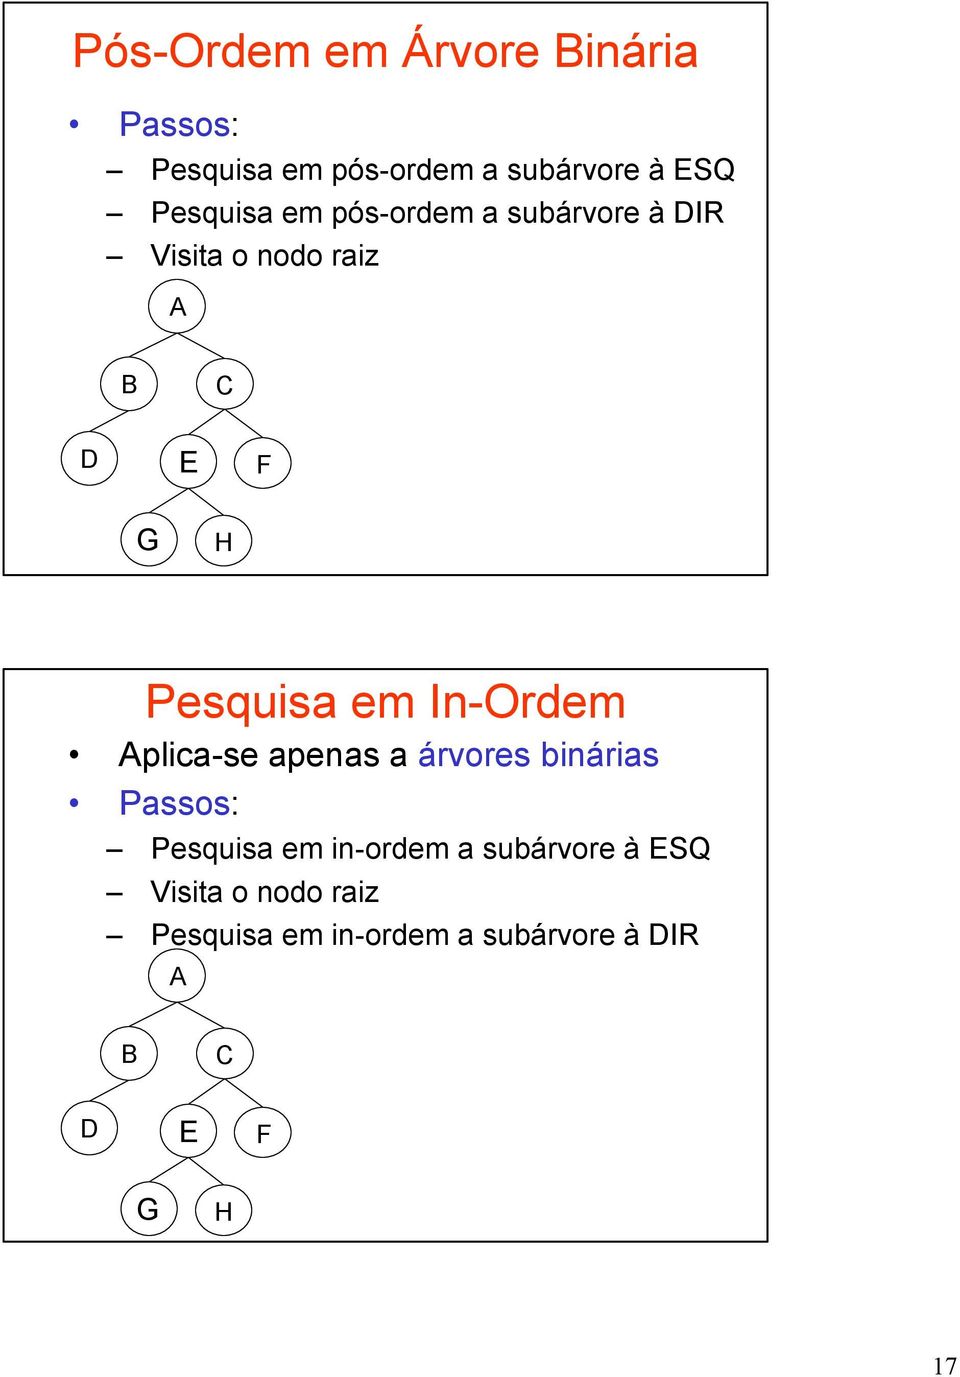 In-Ordem plica-se apenas a árvores binárias Passos: Pesquisa em in-ordem a